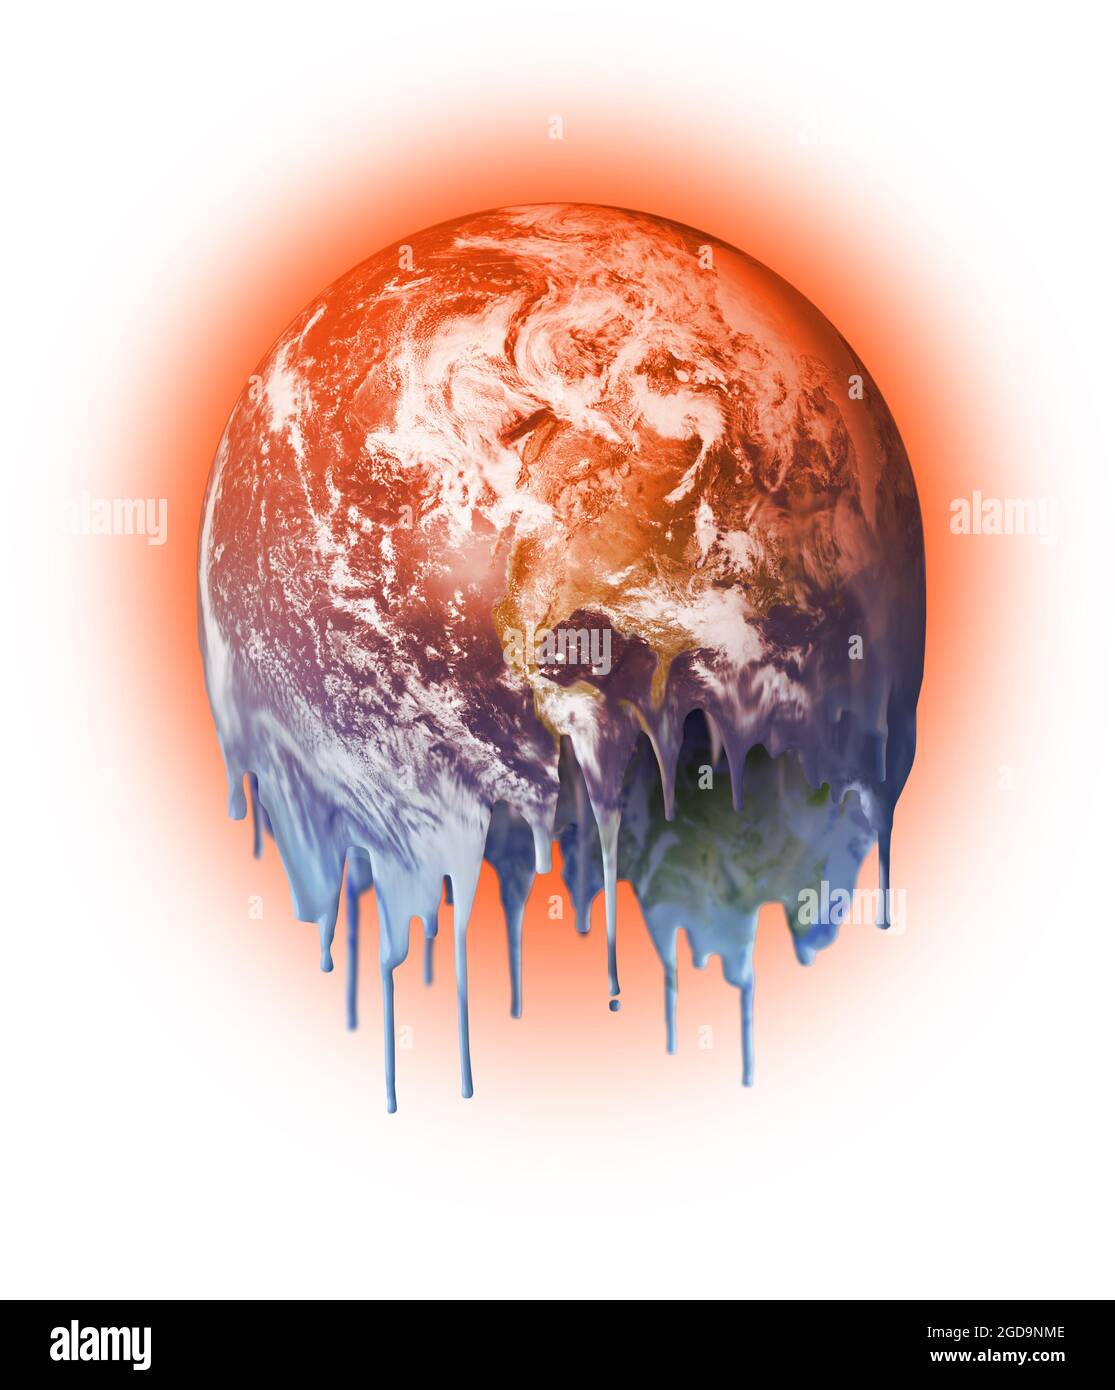 La fonte chaude et goutte à goutte de la planète Terre inhabitable, le réchauffement de la planète le changement climatique concept Banque D'Images